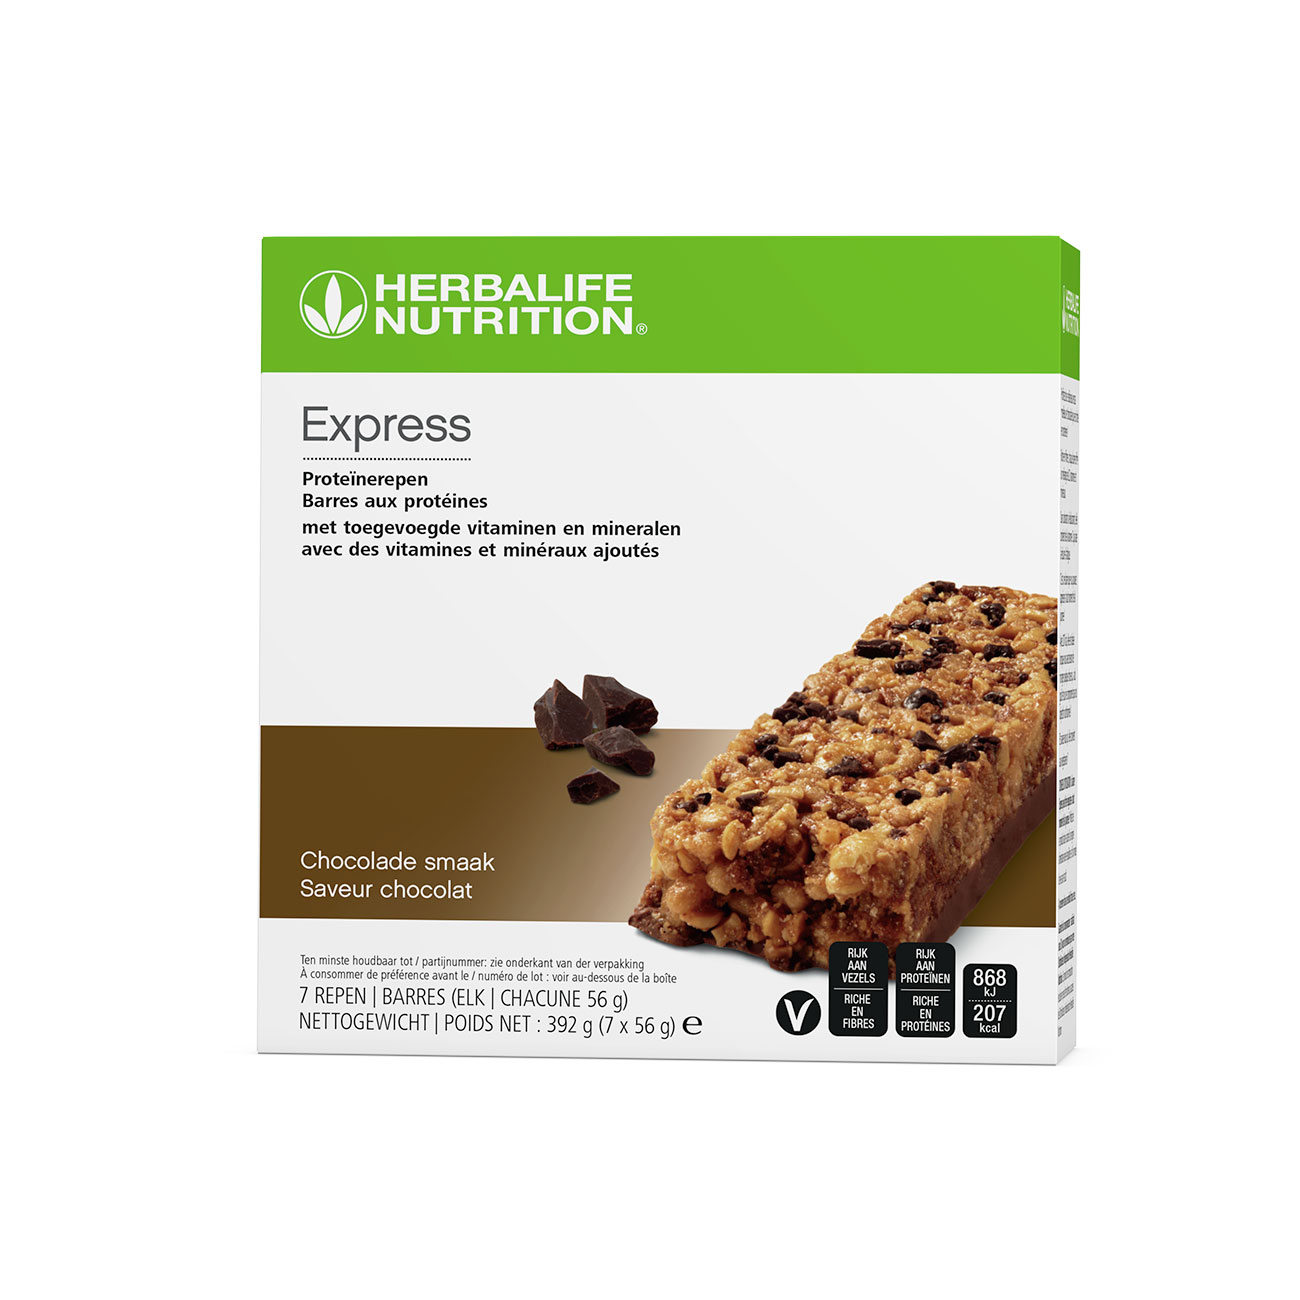 Express Barres aux protéines  chocolat product shot